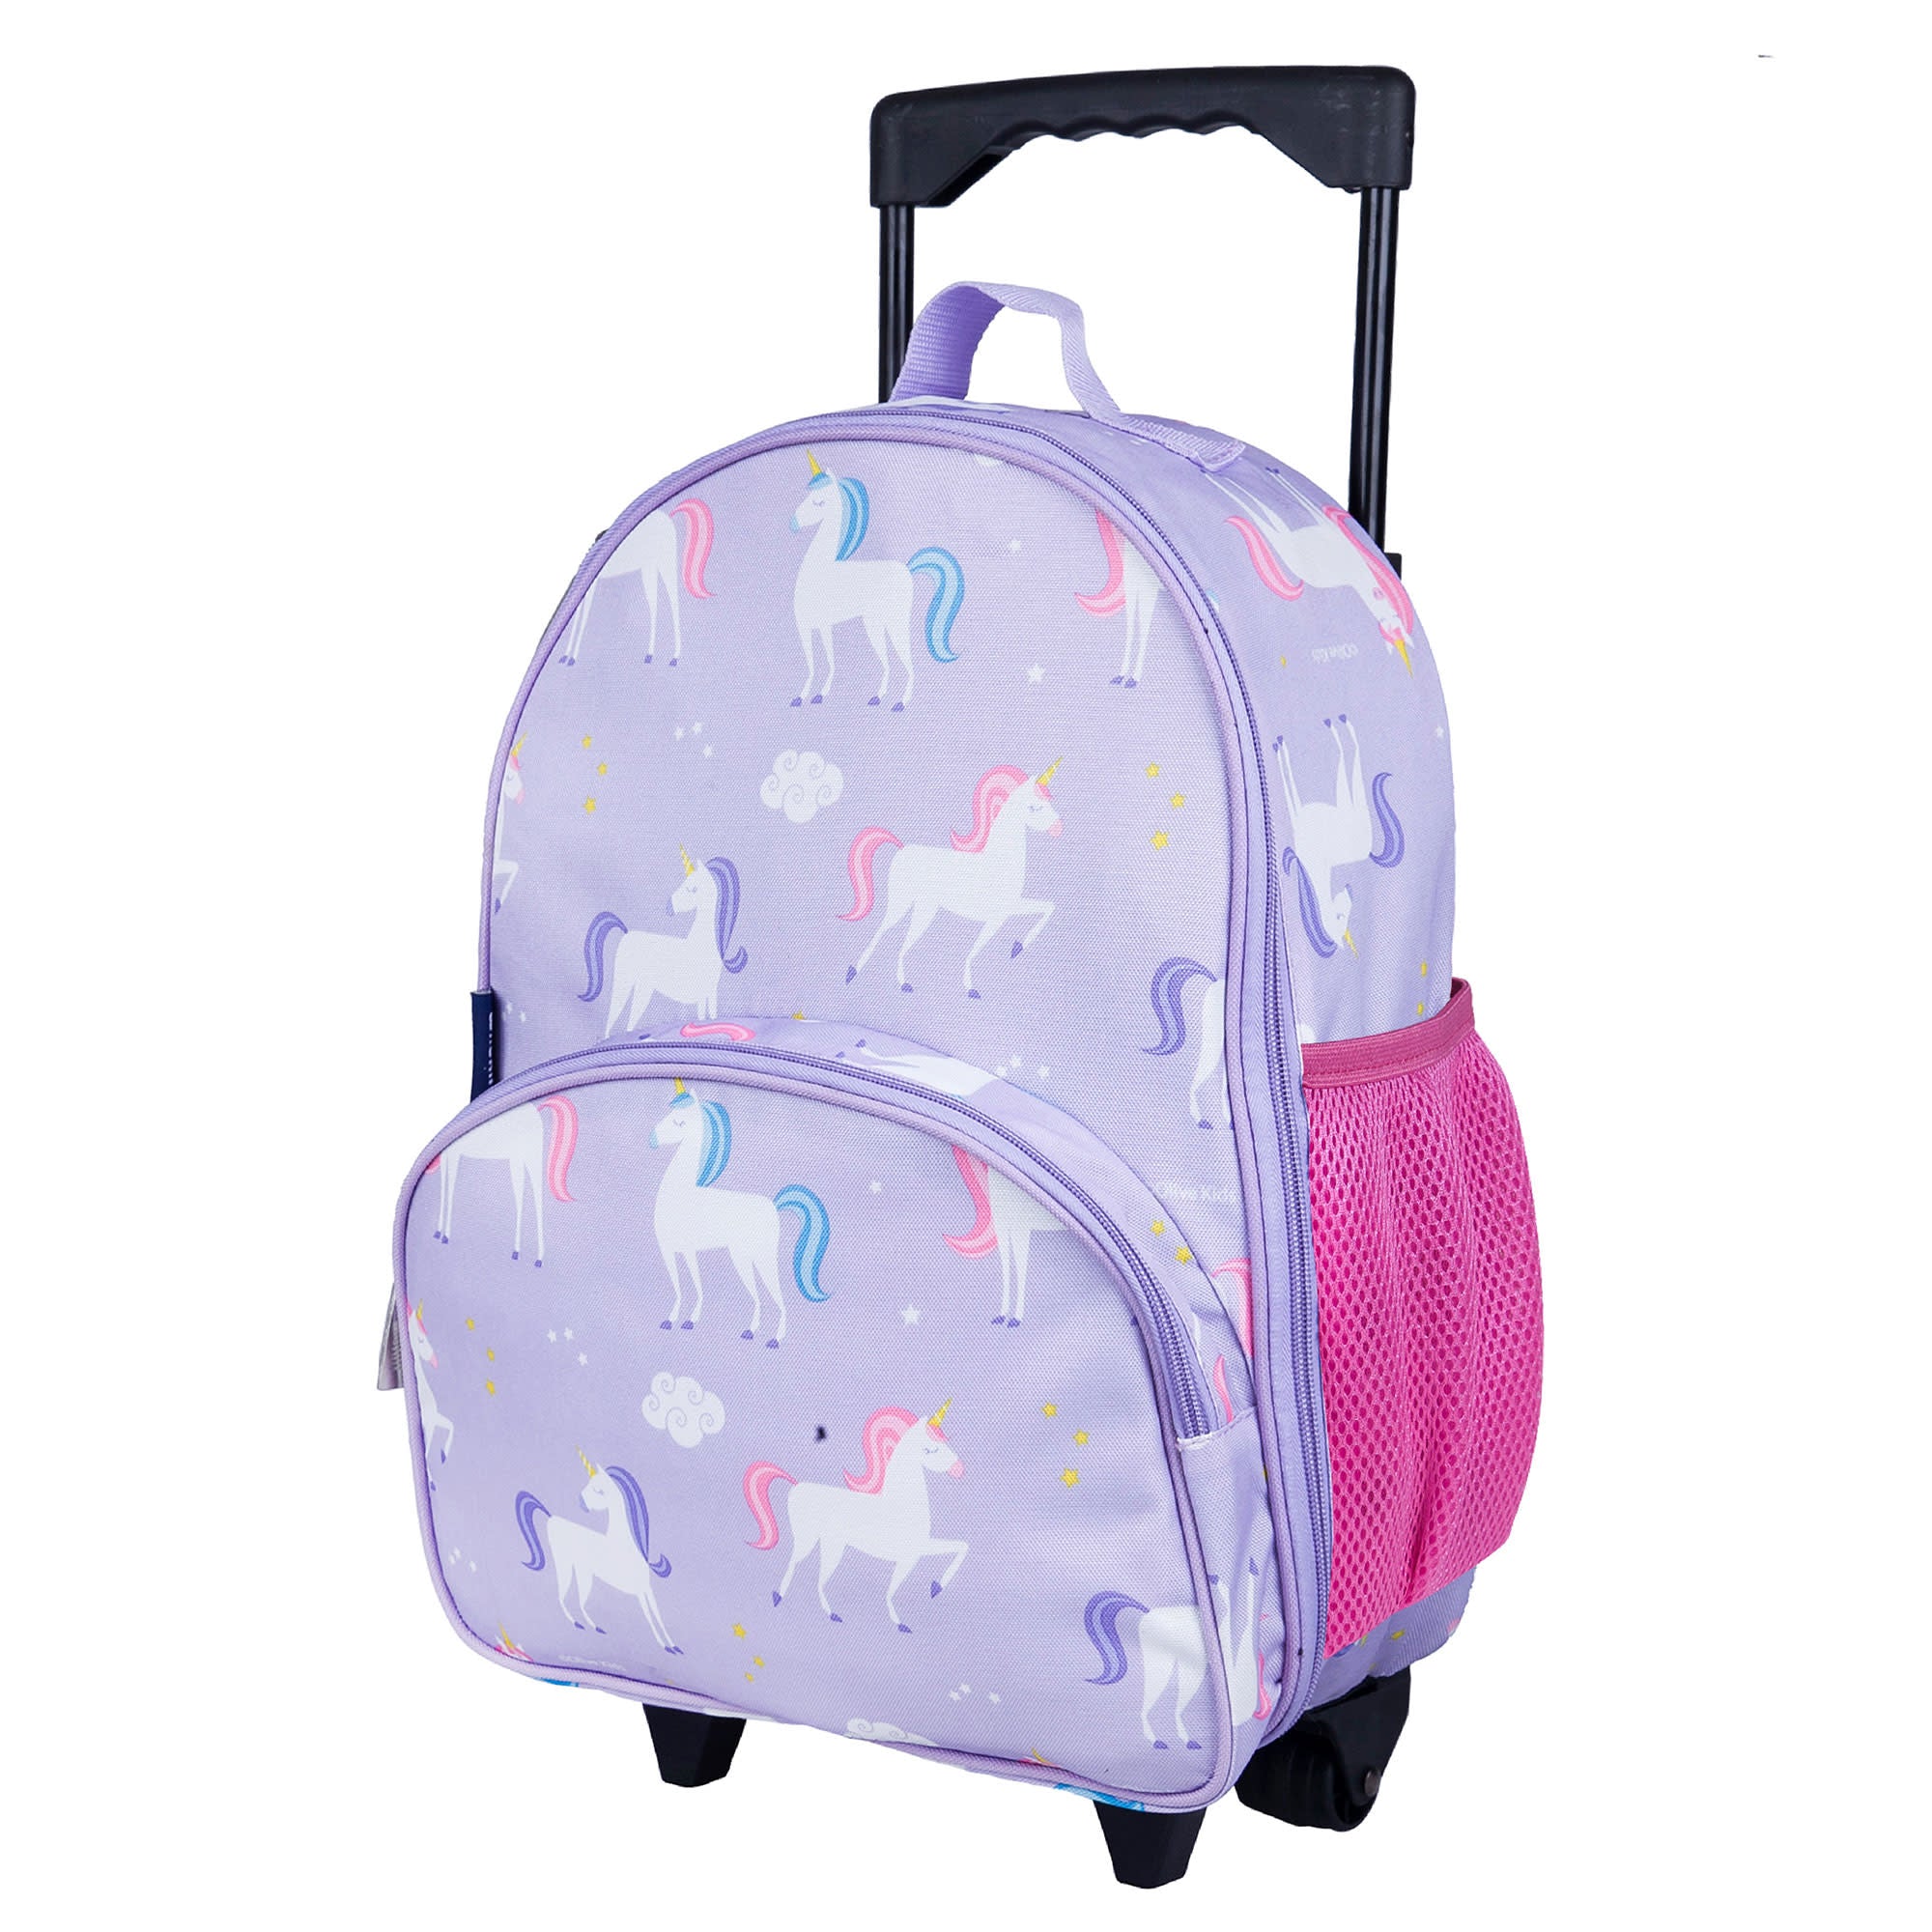 Unicorn Kids Rolling Luggage Set Girls Carry on Suitcase